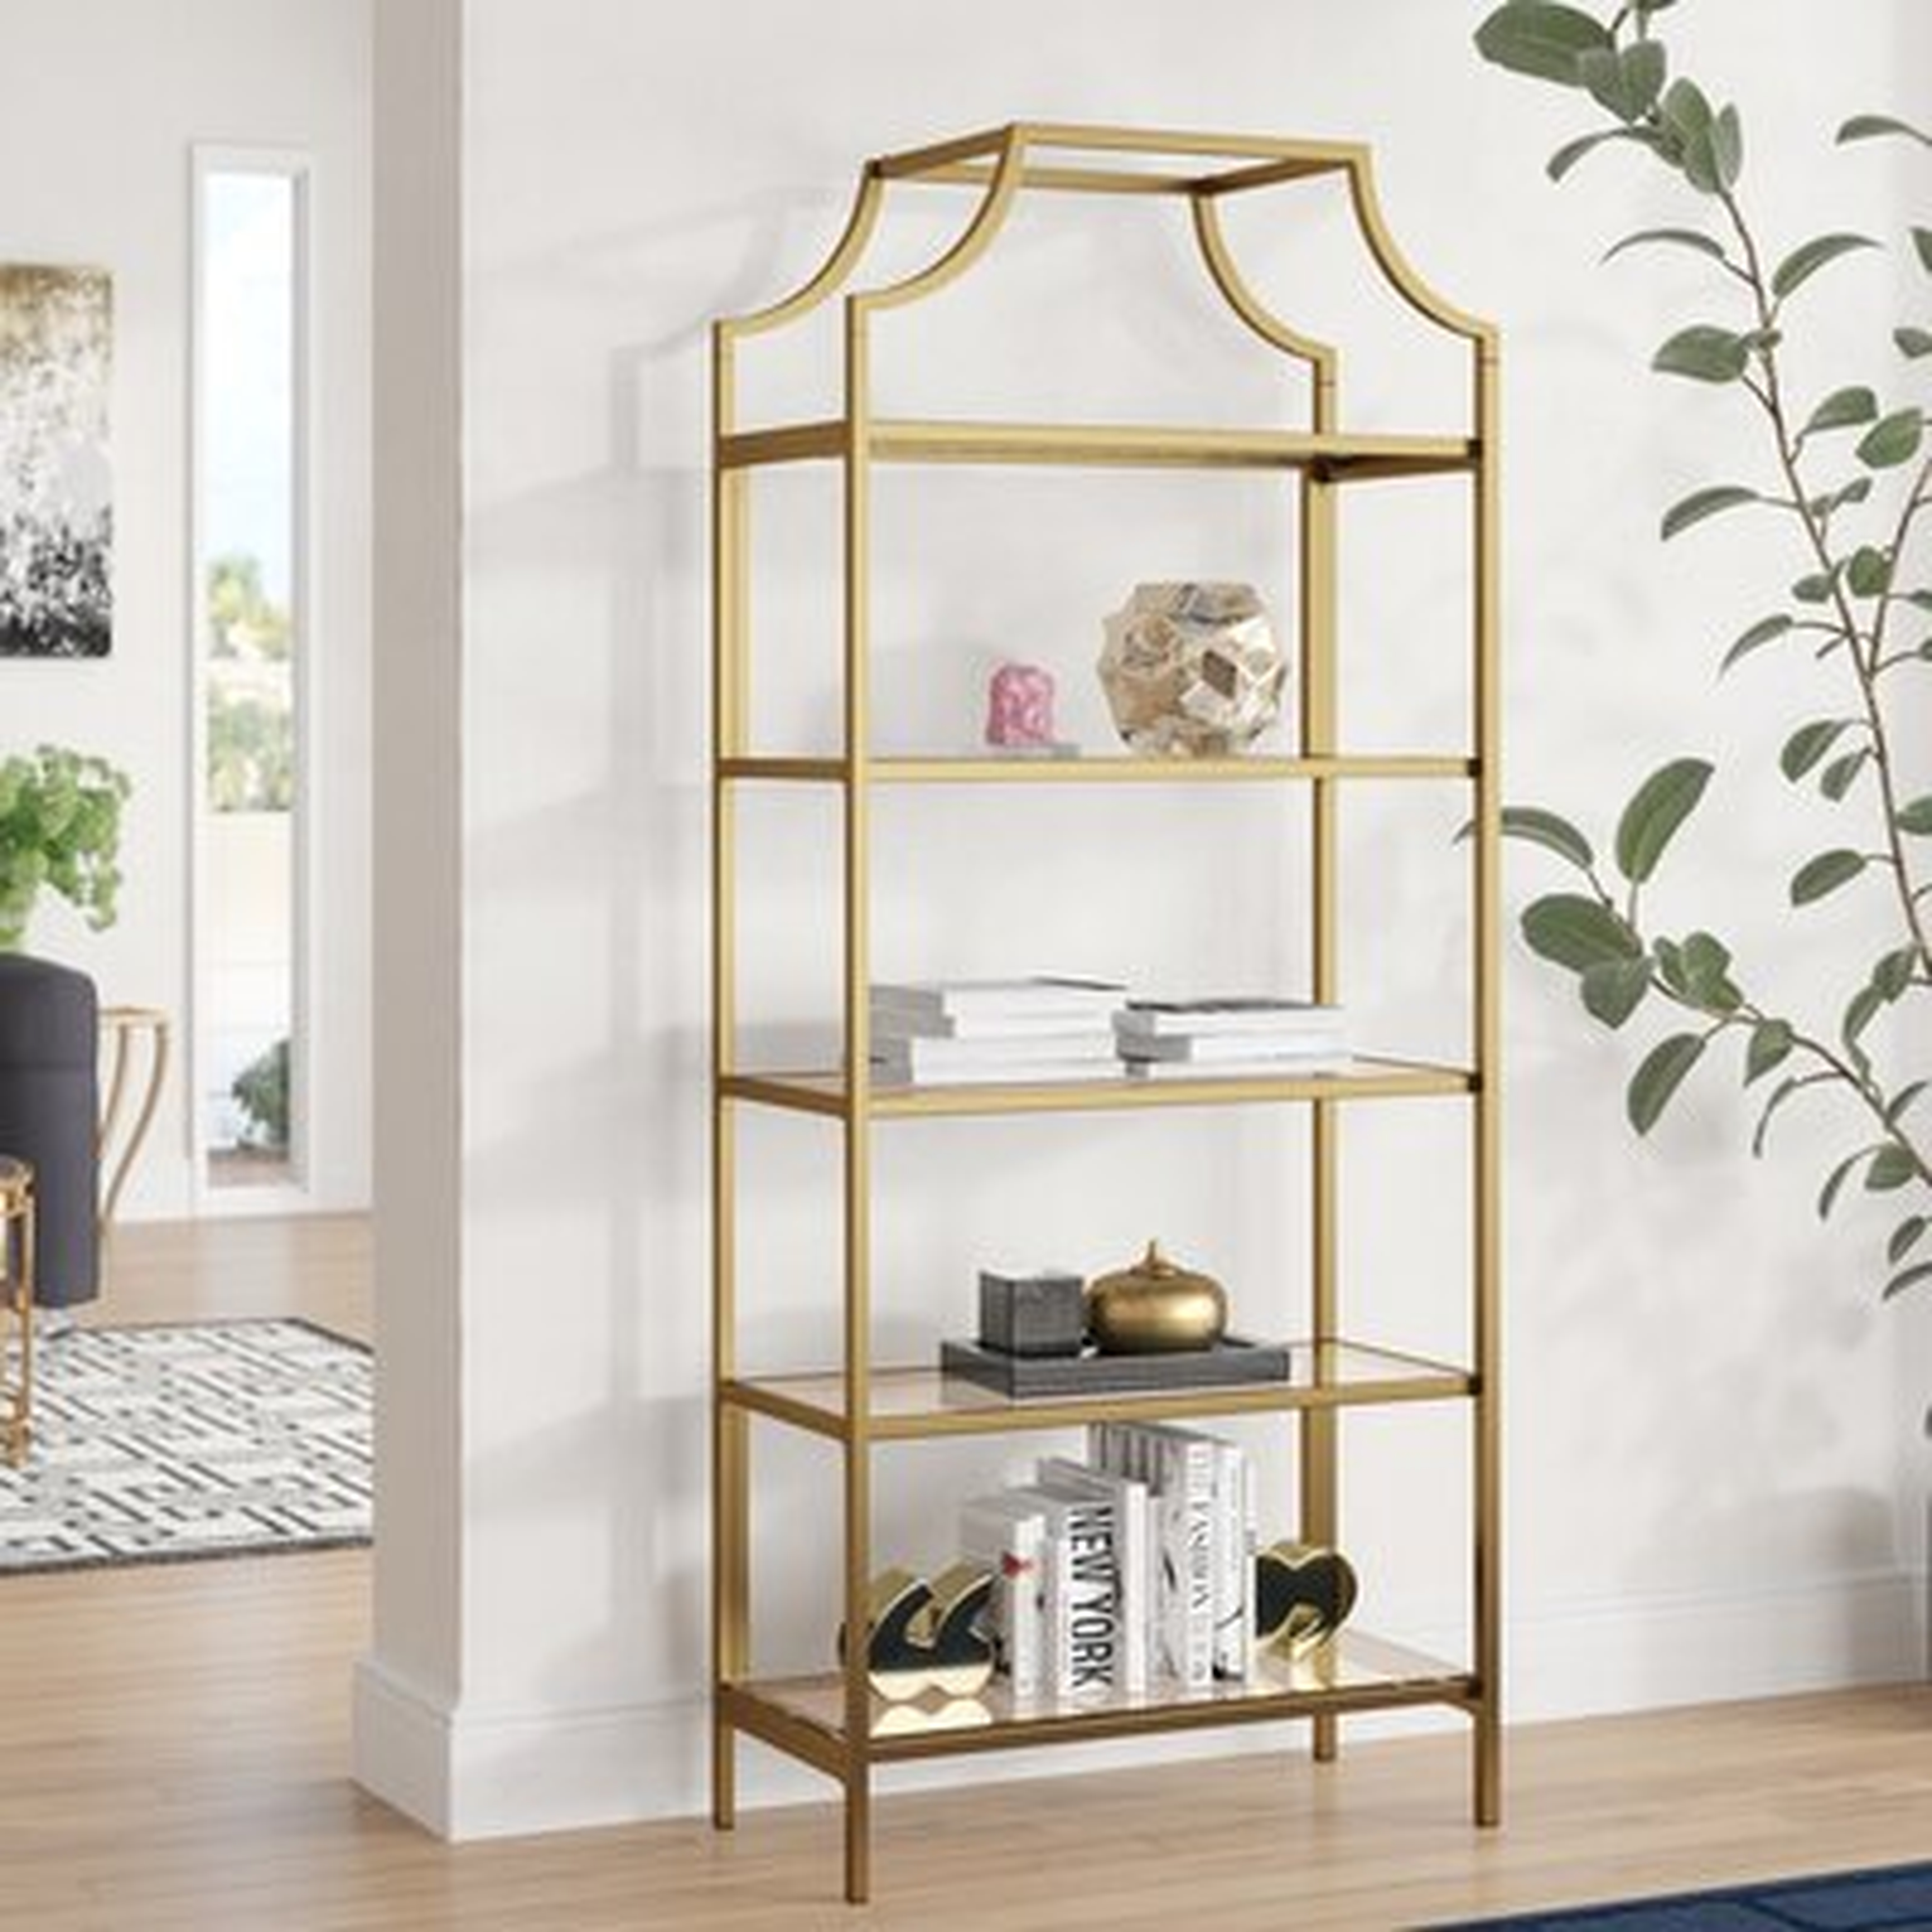 Chiasson Metal Etagere Bookcase, Gold - Wayfair